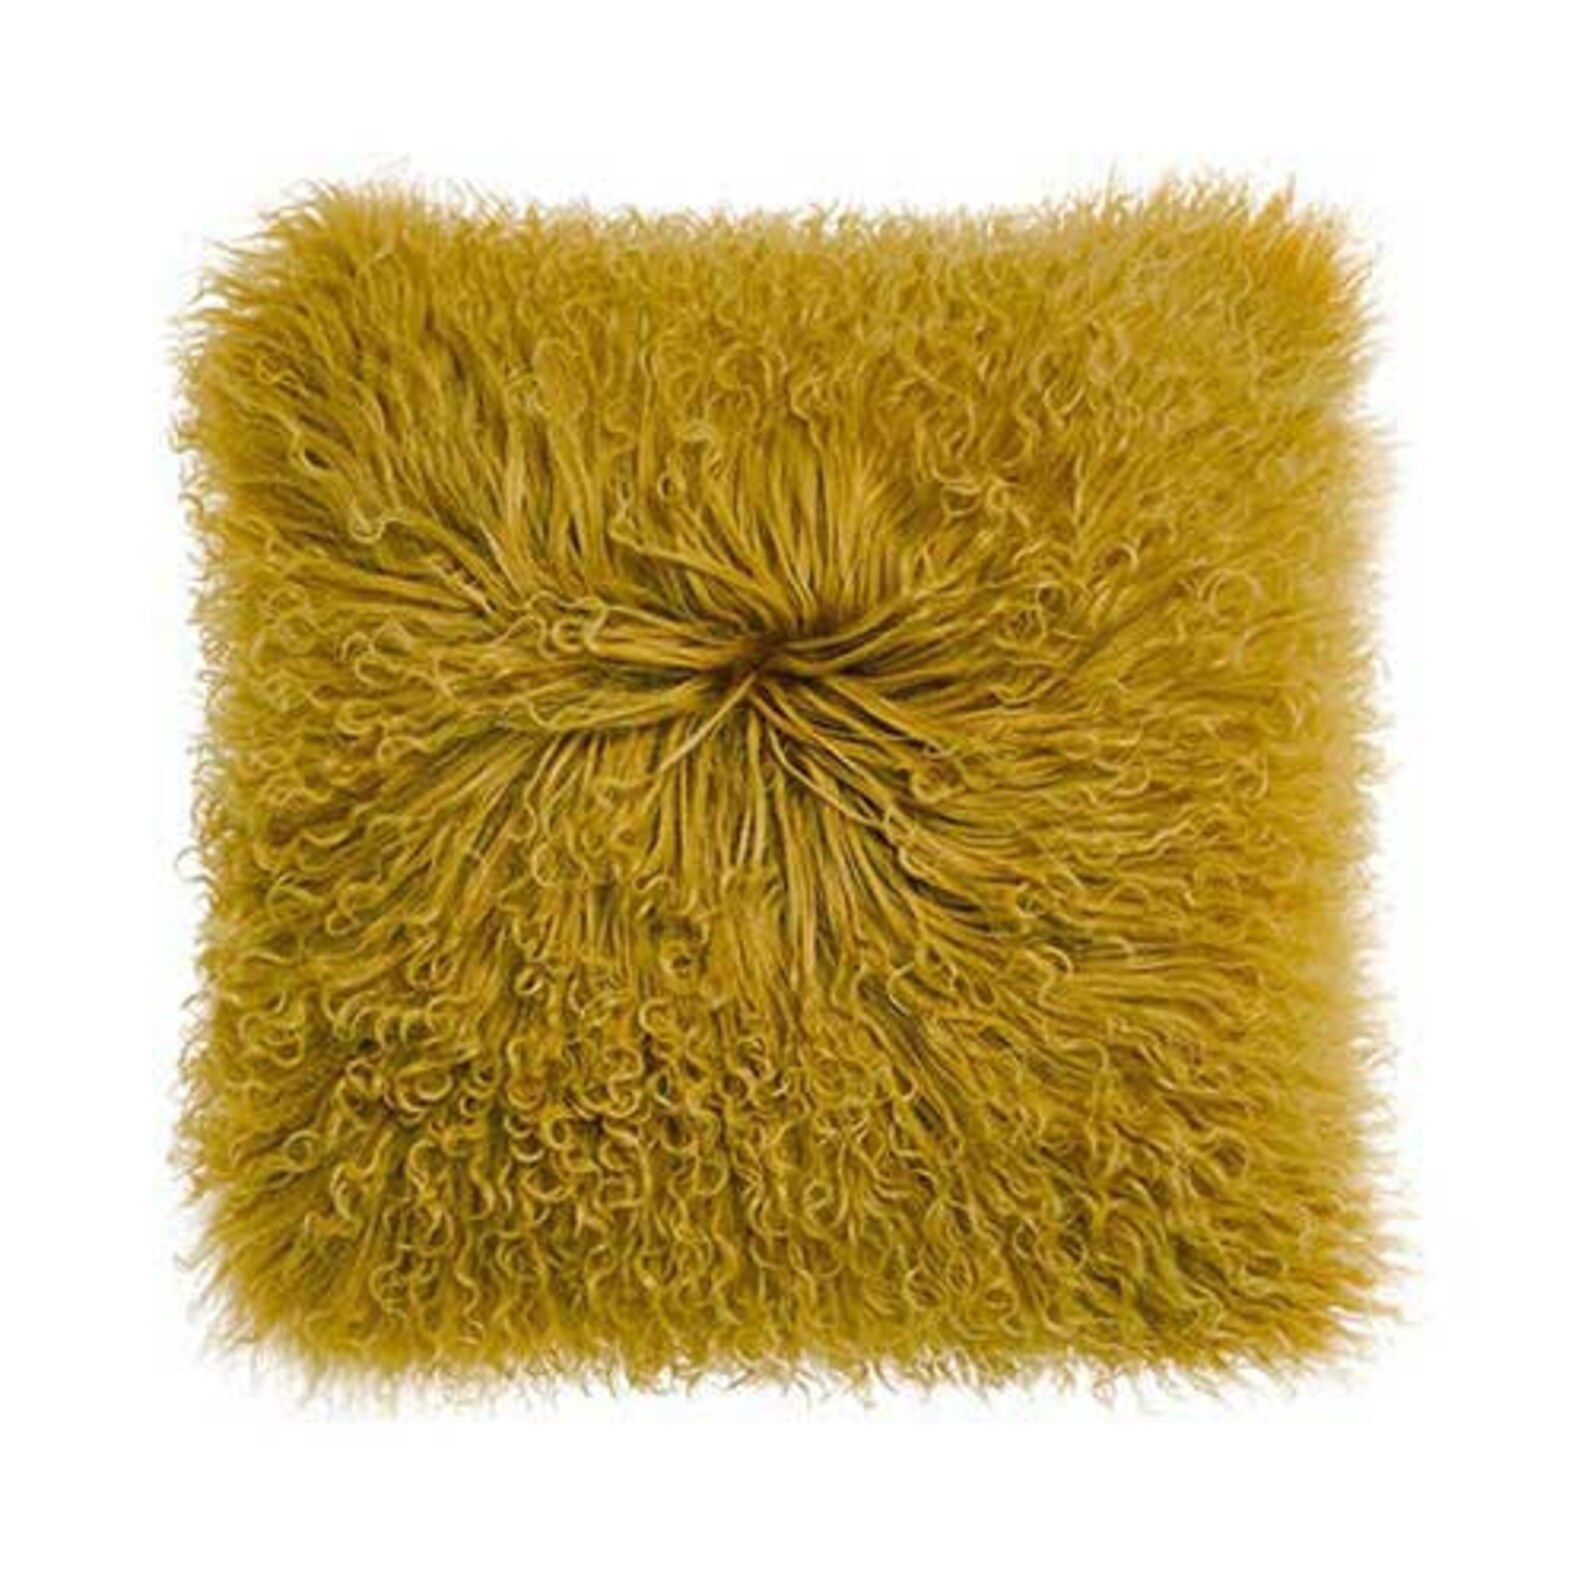 Kissing Tibetan sheepskin | Mongolian pillow | Sheepskin fur cushion mustard yellow | Etsy (US)